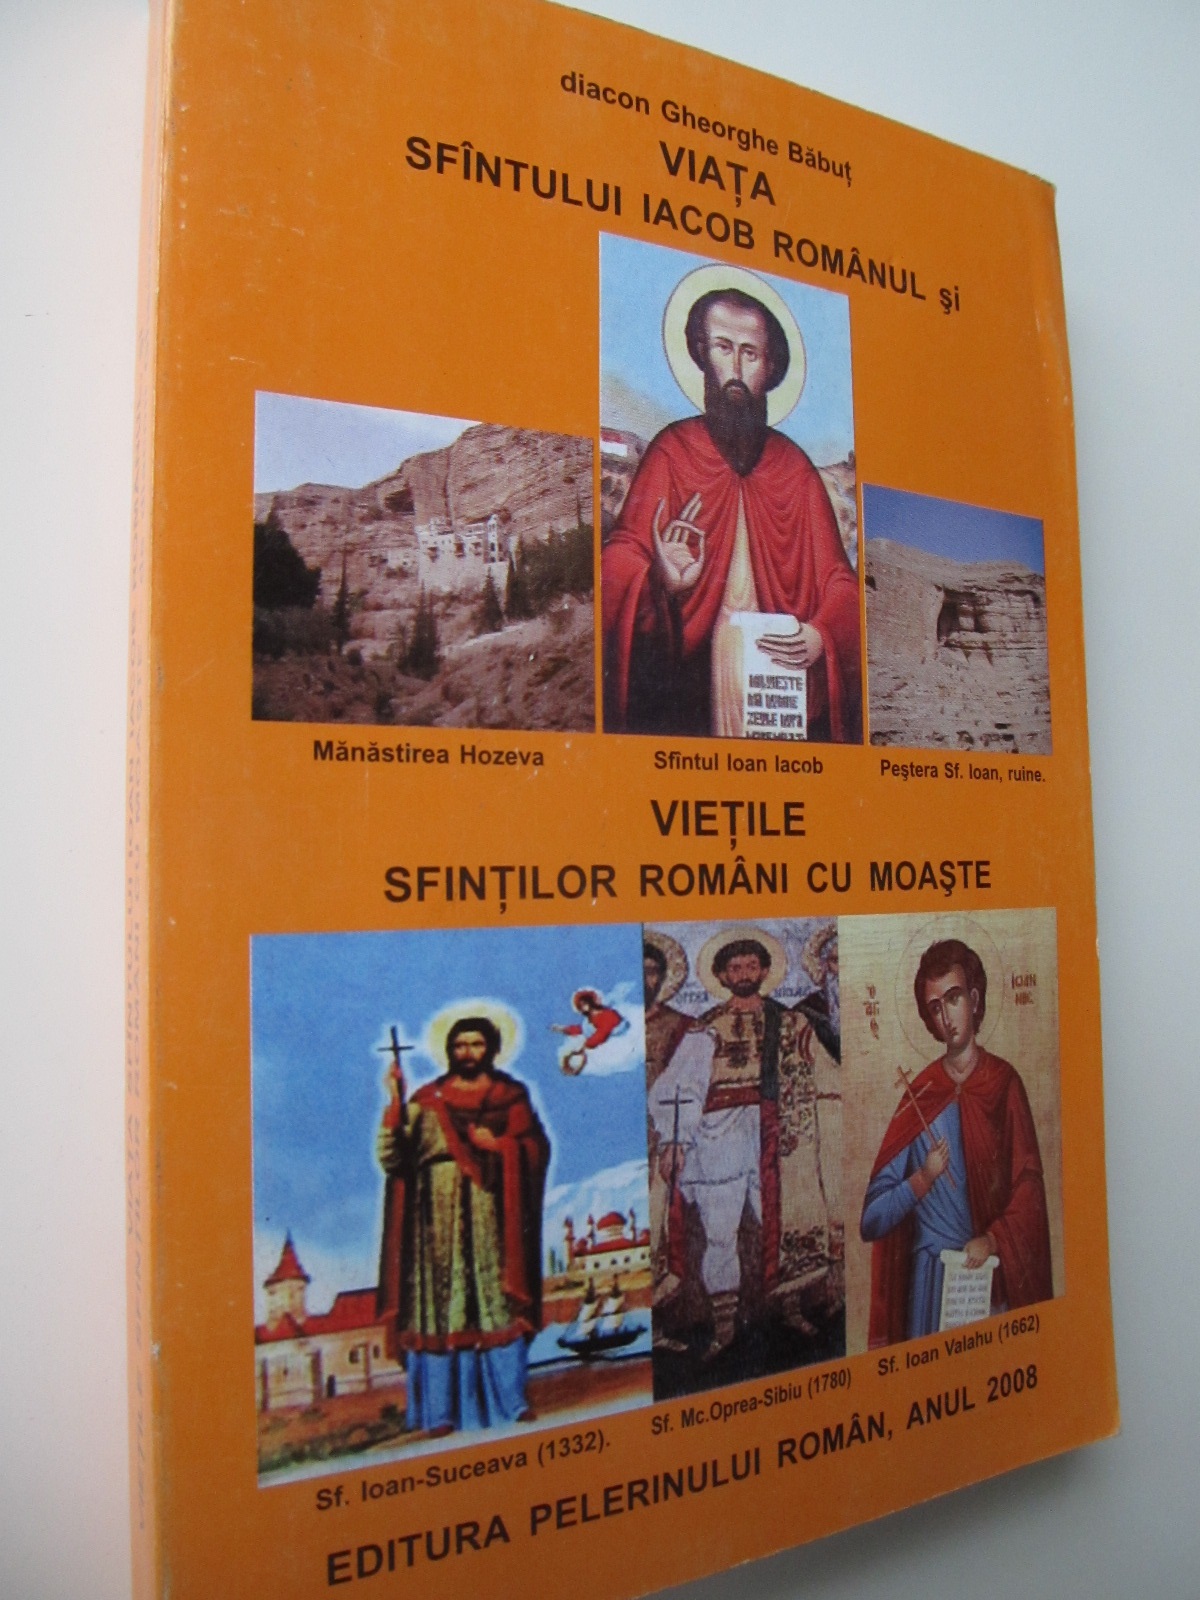 Viata Sfantului Iacob Romanul si  vietile sfintilor cu moaste - Diacon Gheorghe Babut | Detalii carte